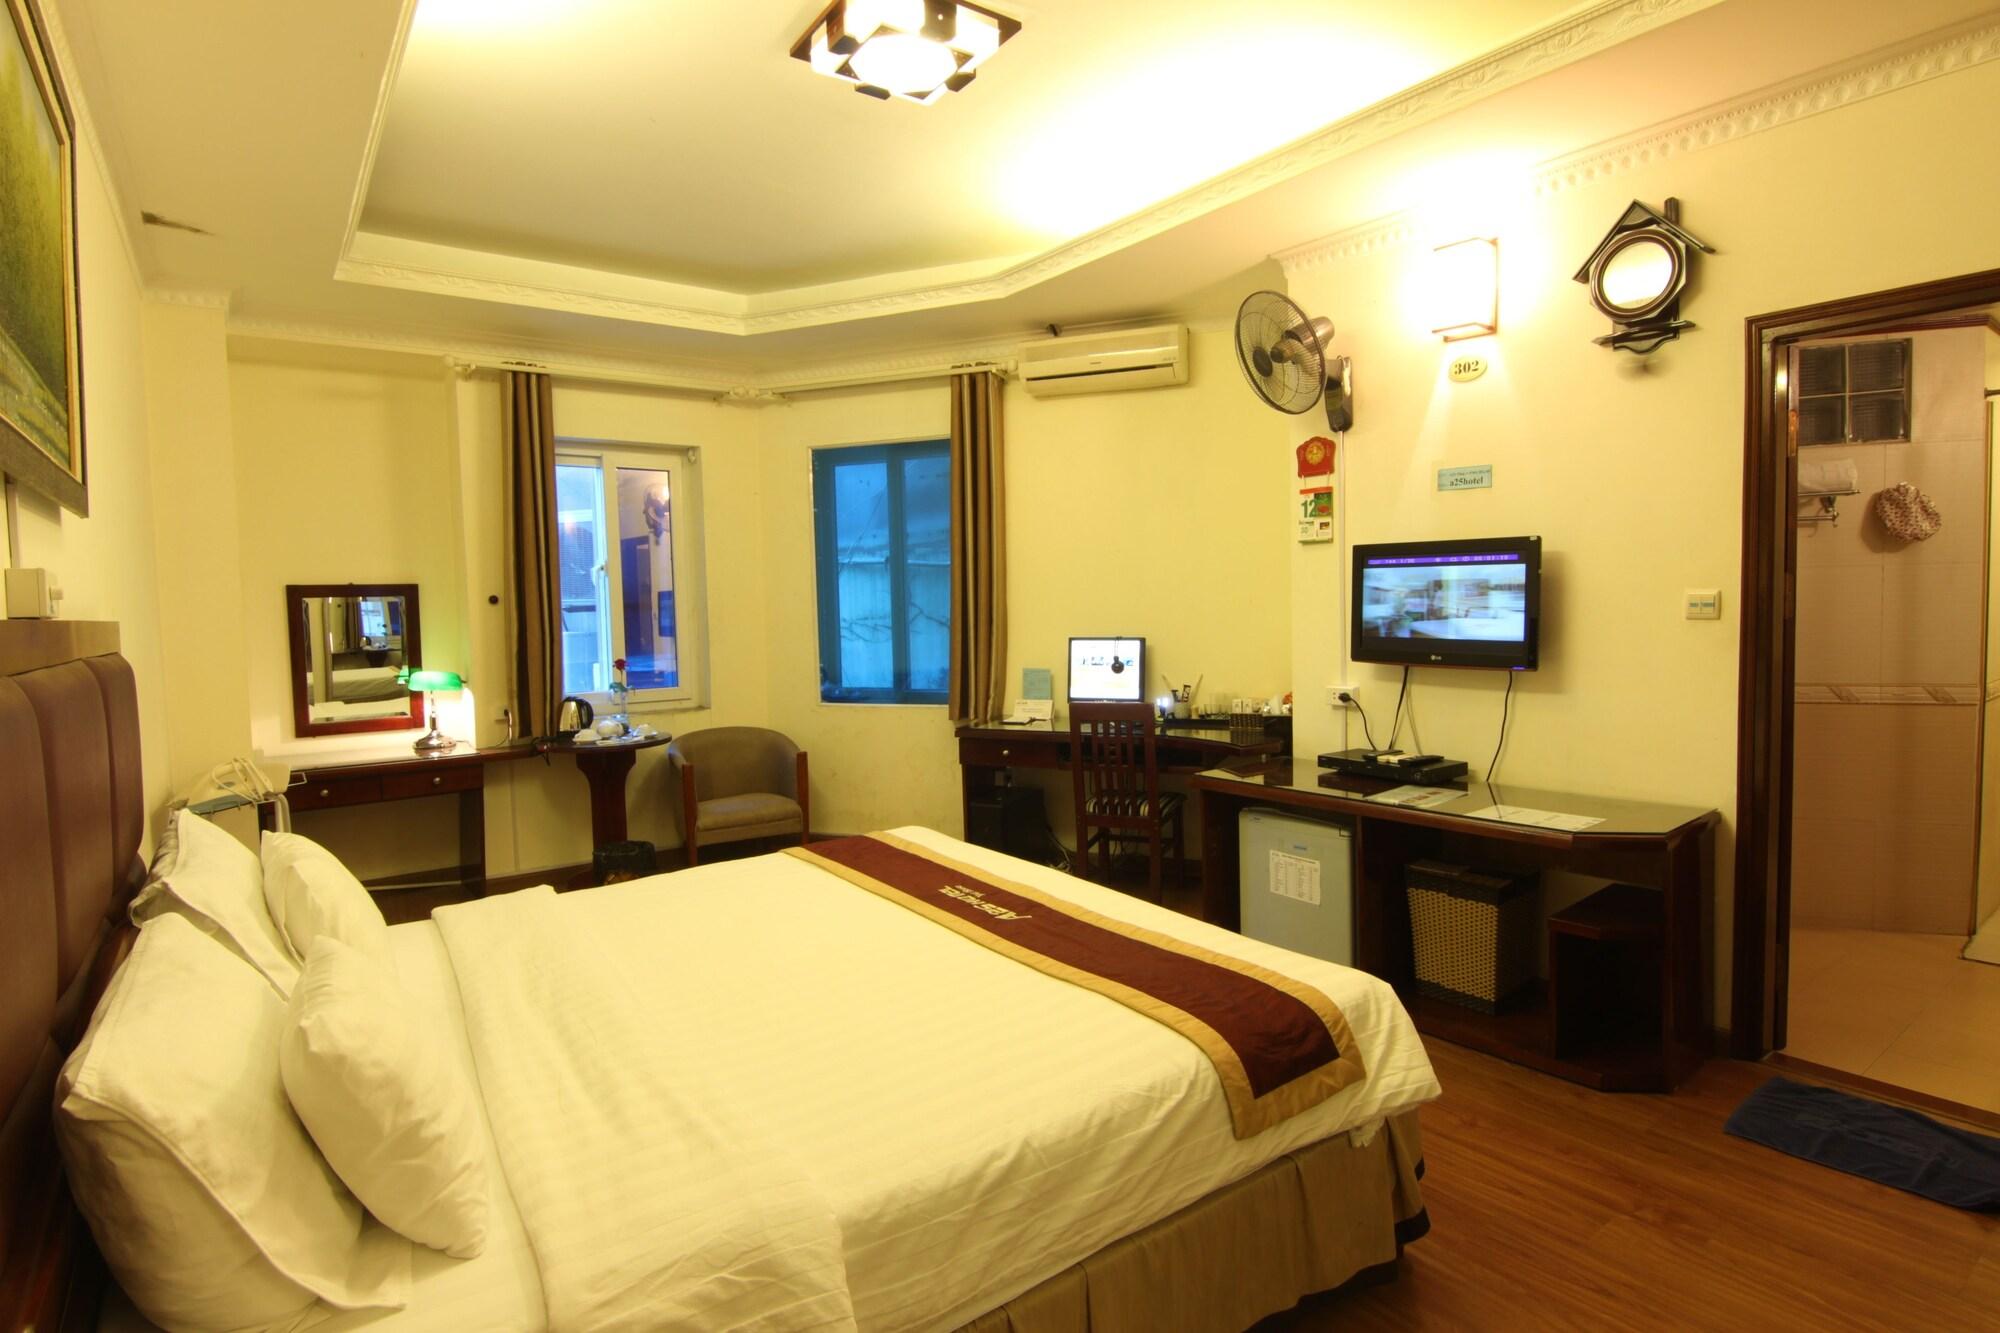 A25 Hotel - 61 Luong Ngoc Quyen ハノイ市 エクステリア 写真